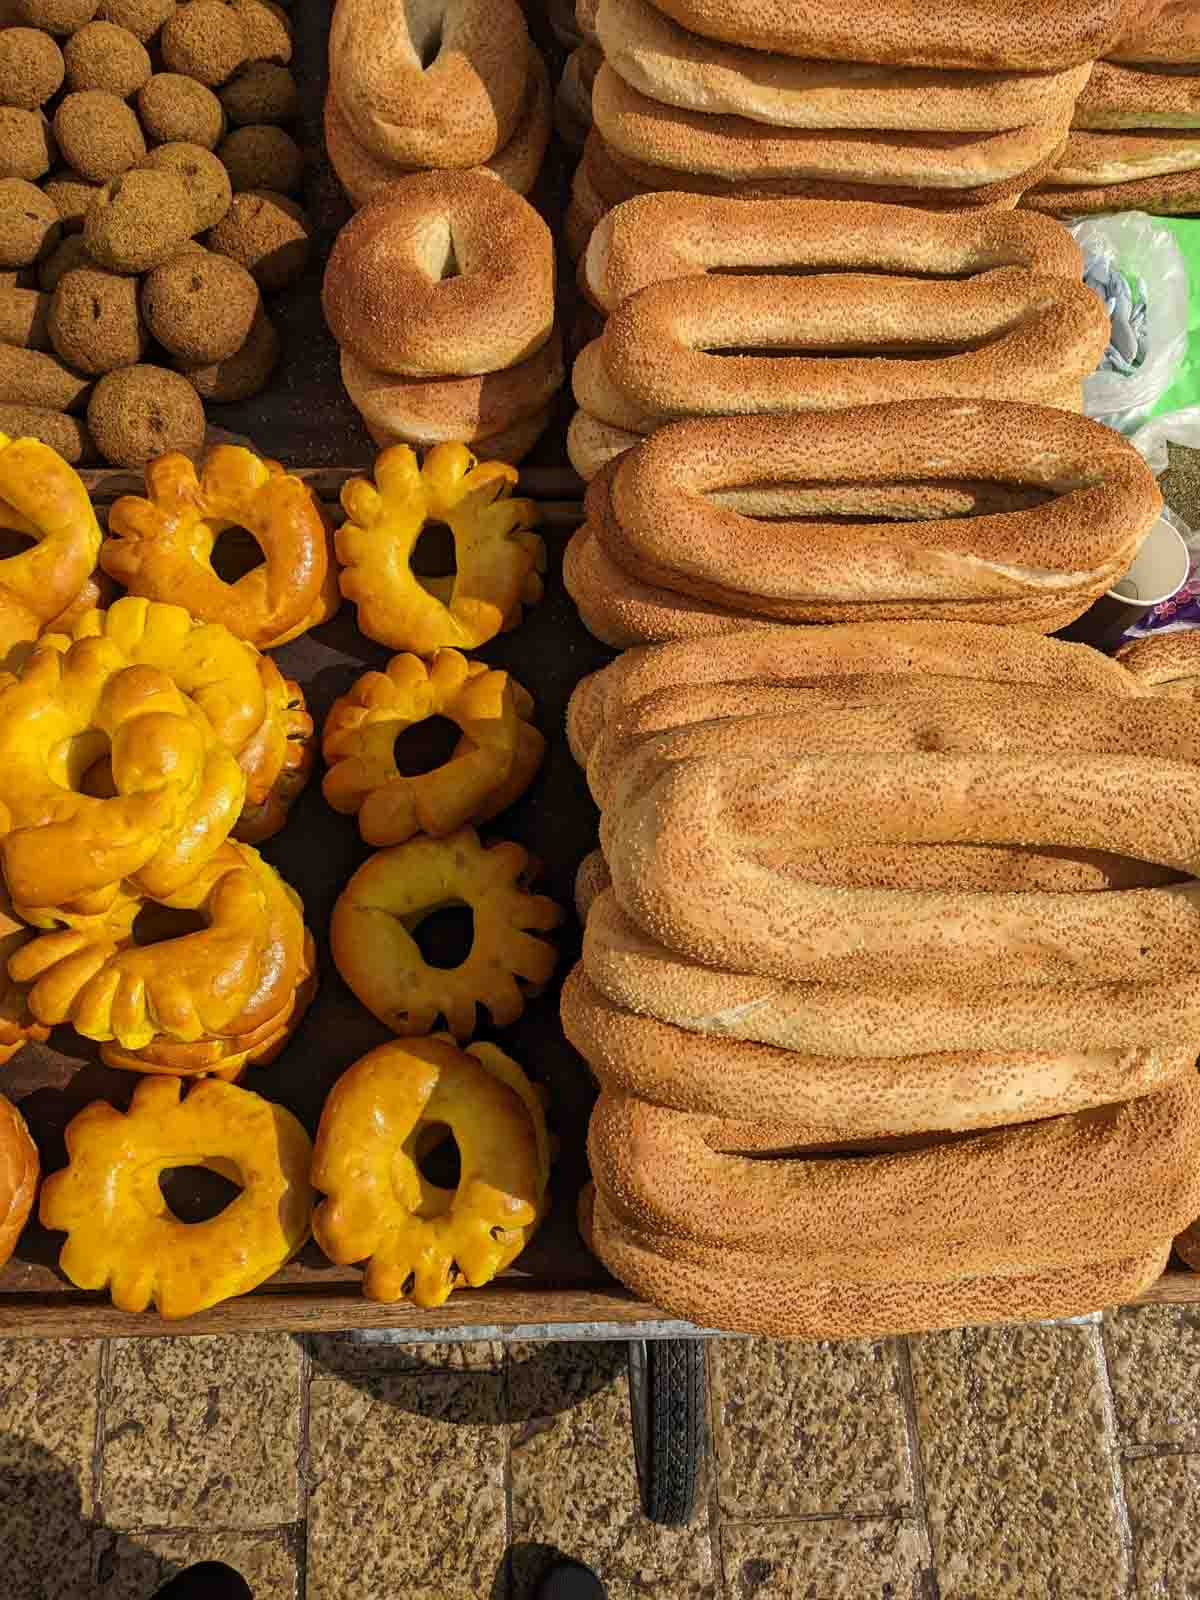 Jerusalem bagels in street vender cart